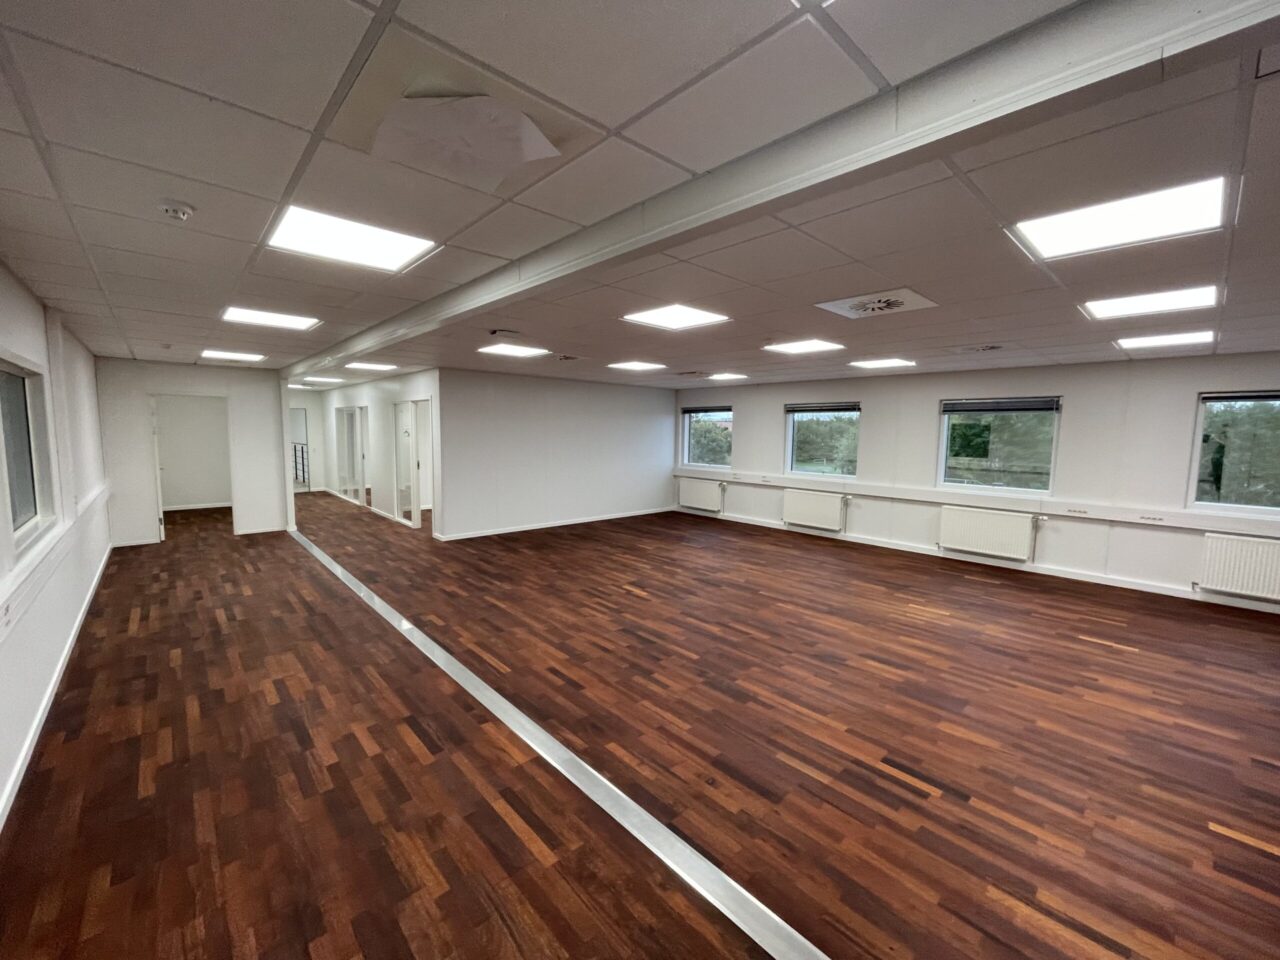 Kontor til leje i Kolding - Hvide vægge og loft med mørkebrun trægulv og vinduer